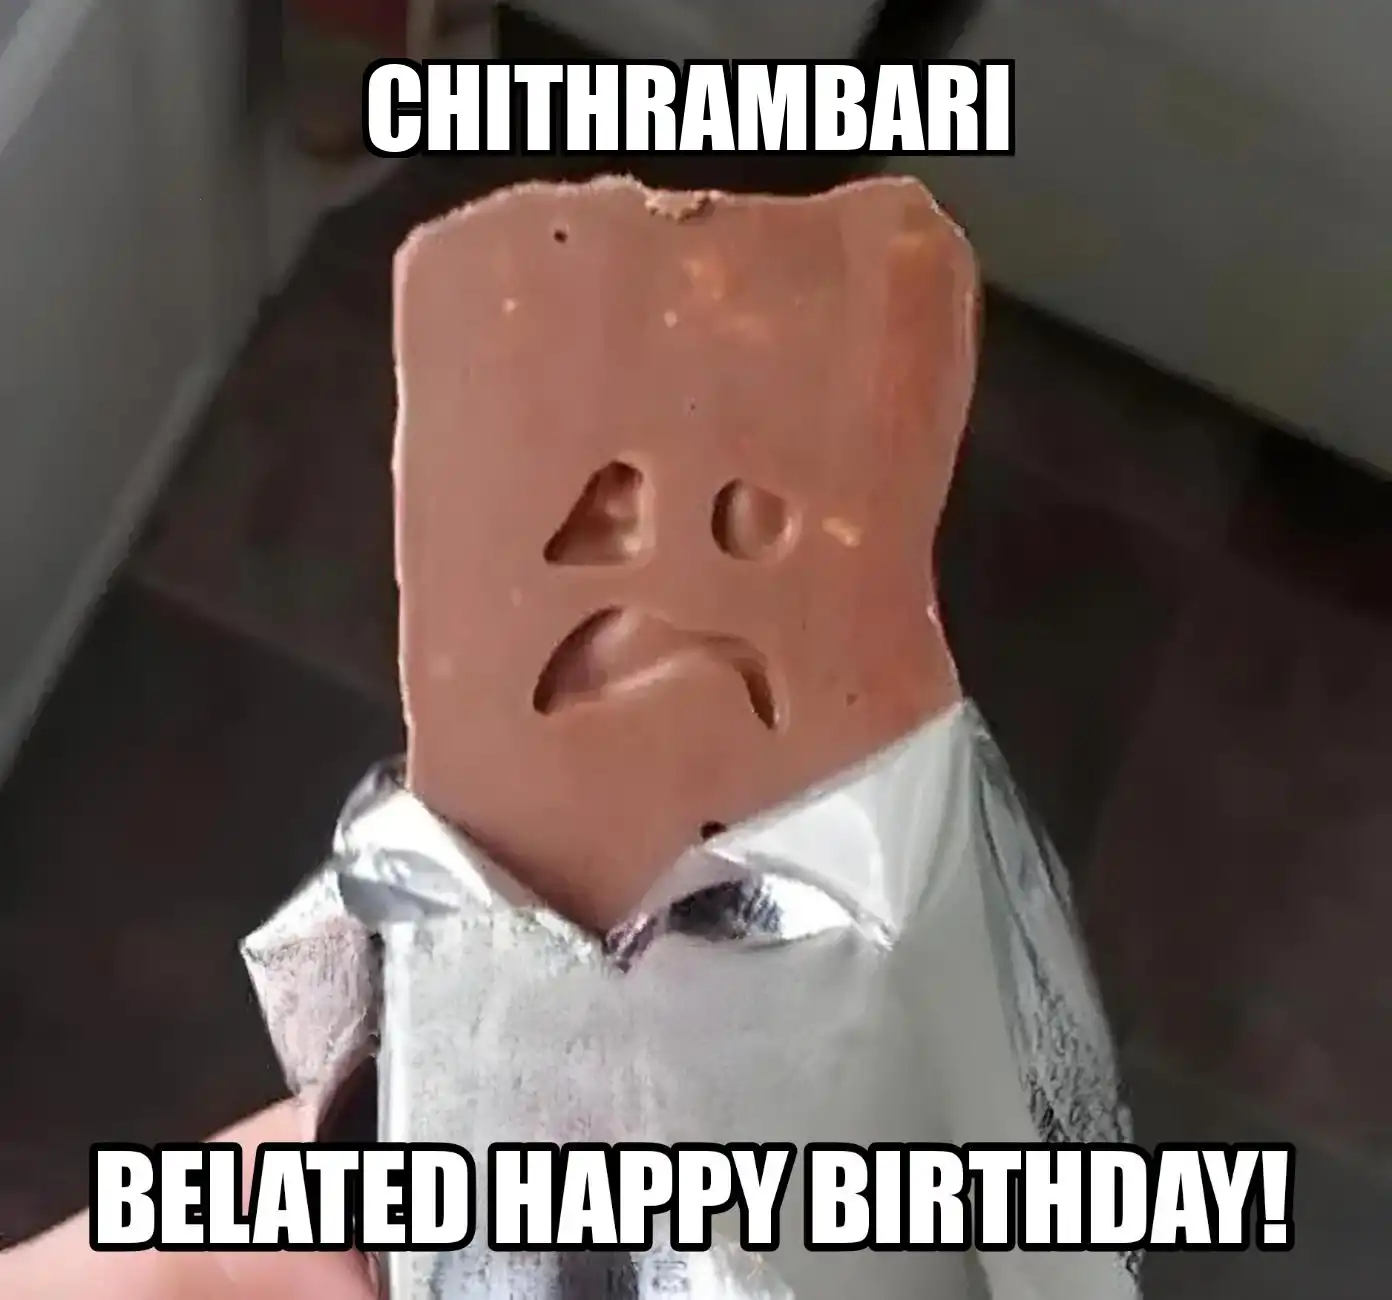 Happy Birthday Chithrambari Belated Happy Birthday Meme